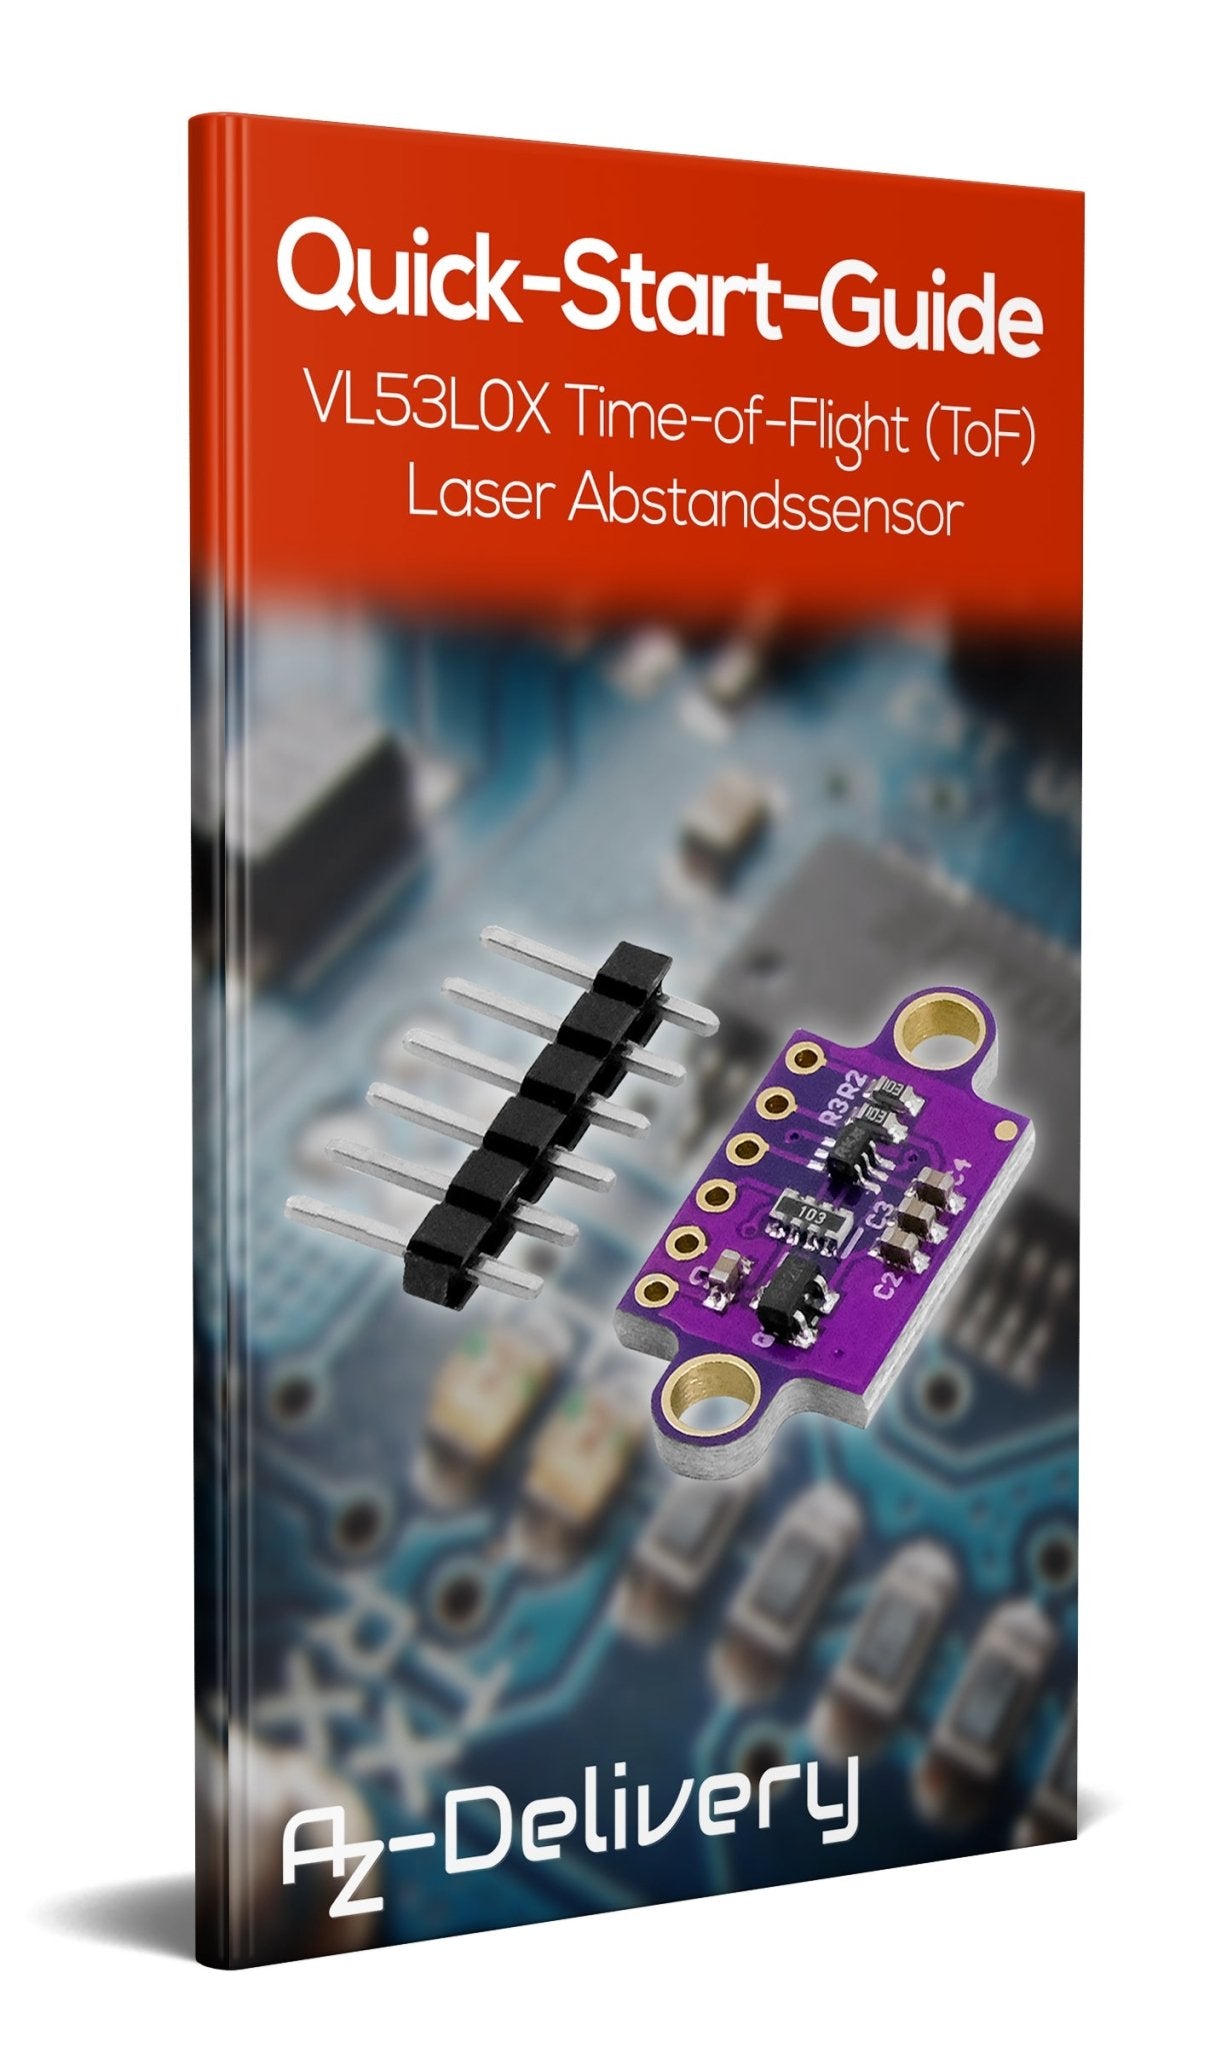 VL53L0X Time-of-Flight (ToF) Laser Abstandssensor - AZ-Delivery